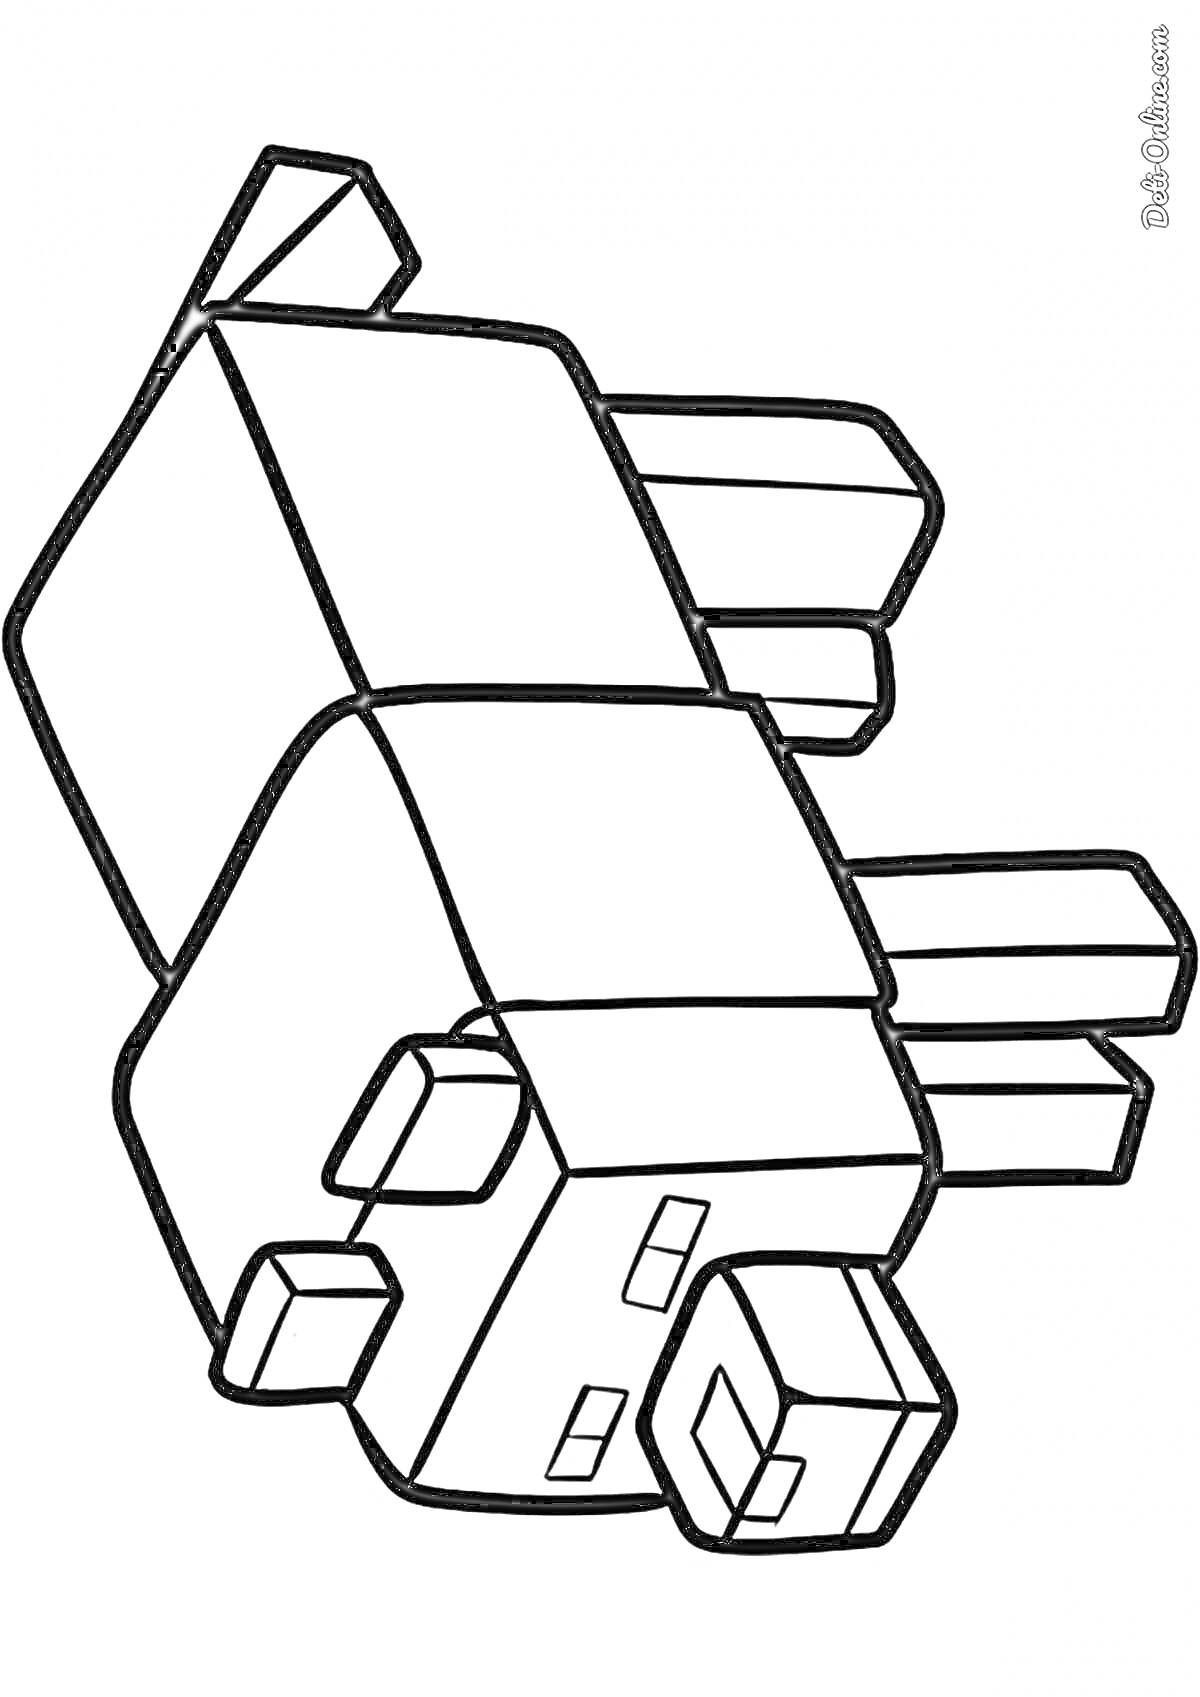 Раскраска Майнкрафт собачка с блоковой структурой тела и хвоста